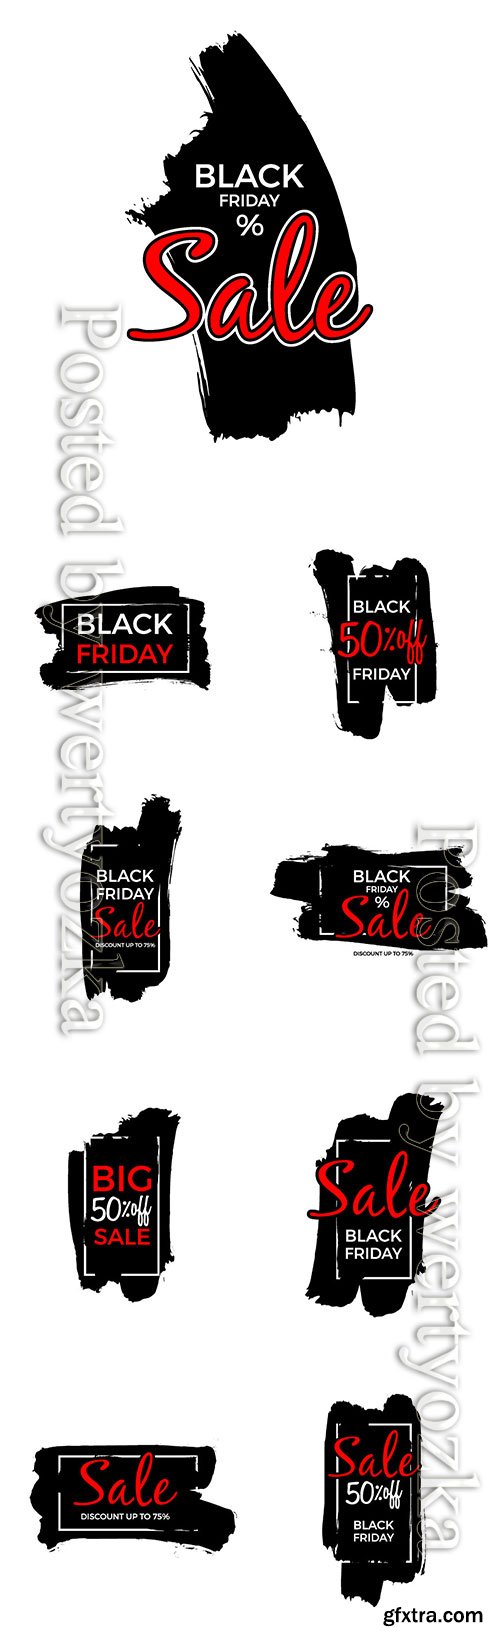 Black friday sale vector poster or label design